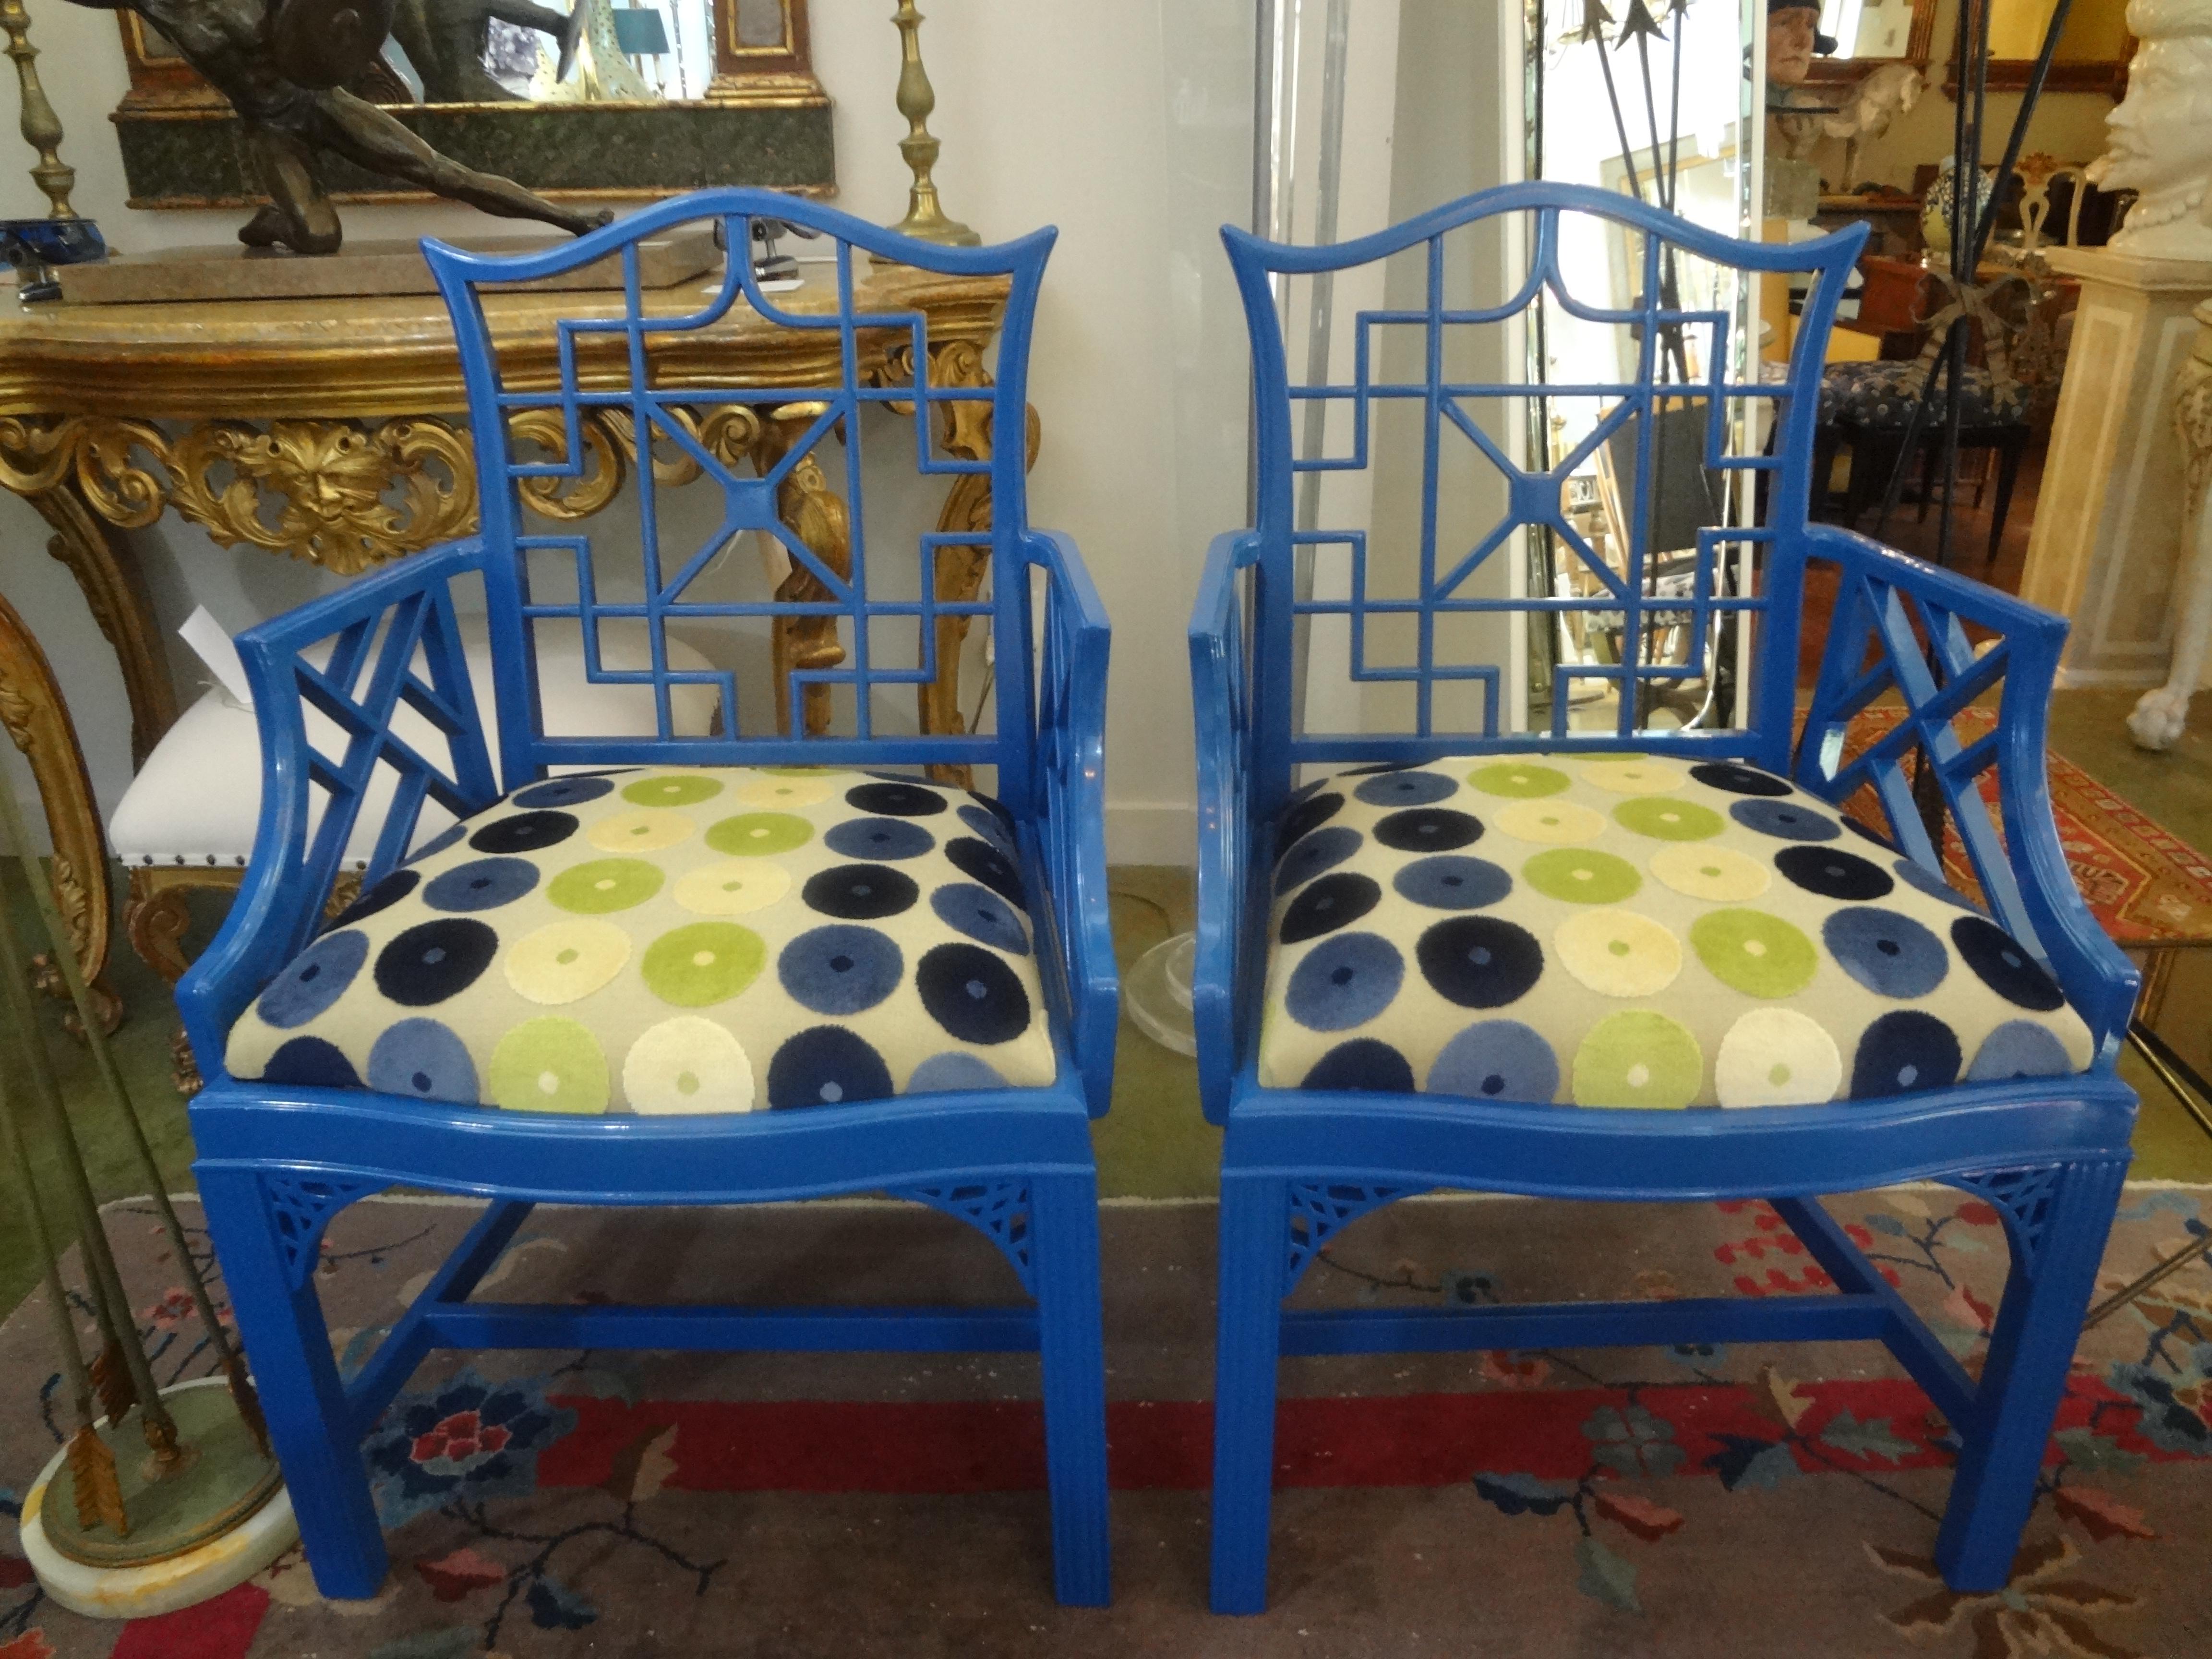 Paire de chaises chinoises de style Chippendale.
Paire de chaises chinoises de style Chippendale dans une magnifique finition bleue brillante. Cette paire présente de magnifiques détails et a été récemment recouverte d'un magnifique tissu de